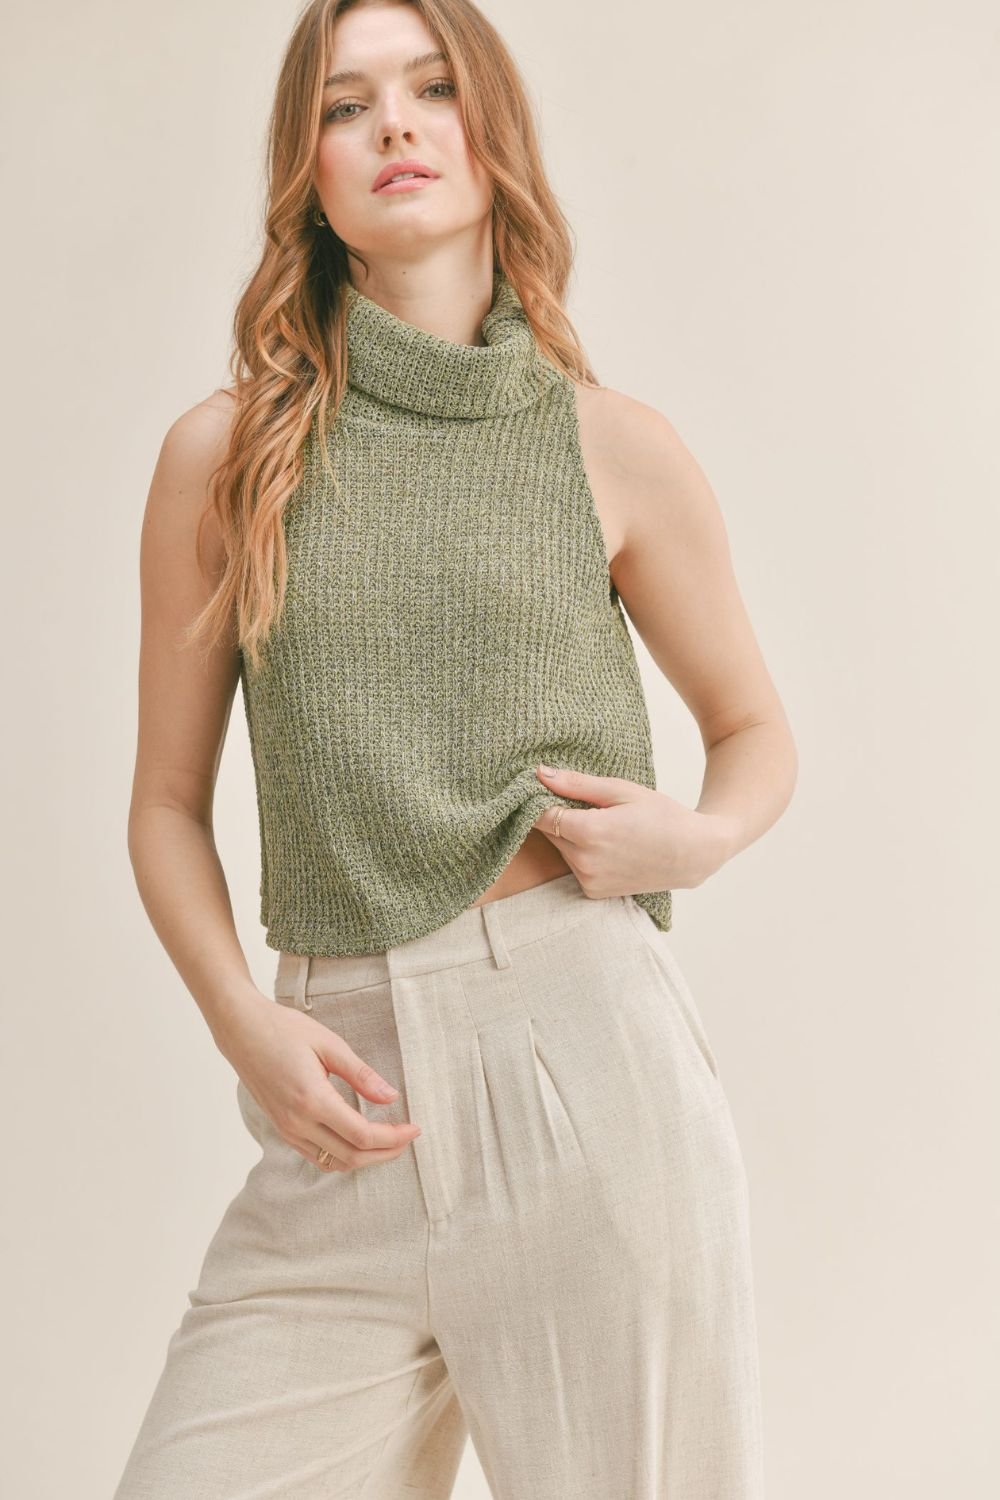 Women's Knit Sleeveless Turtleneck Tank | Sadie & Sage | Olive Green - Women's Shirts & Tops - Blooming Daily